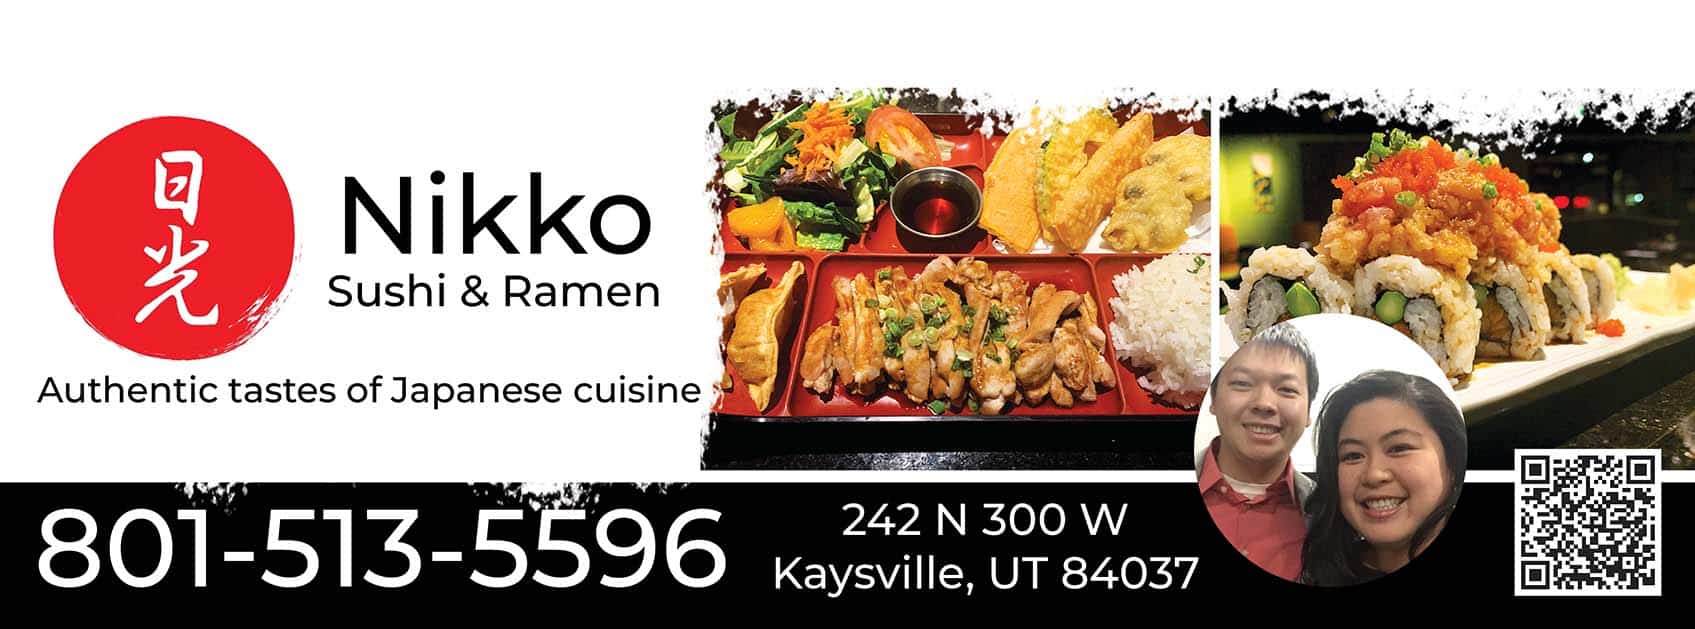 Nikko Sushi & Ramen 801-513-5596